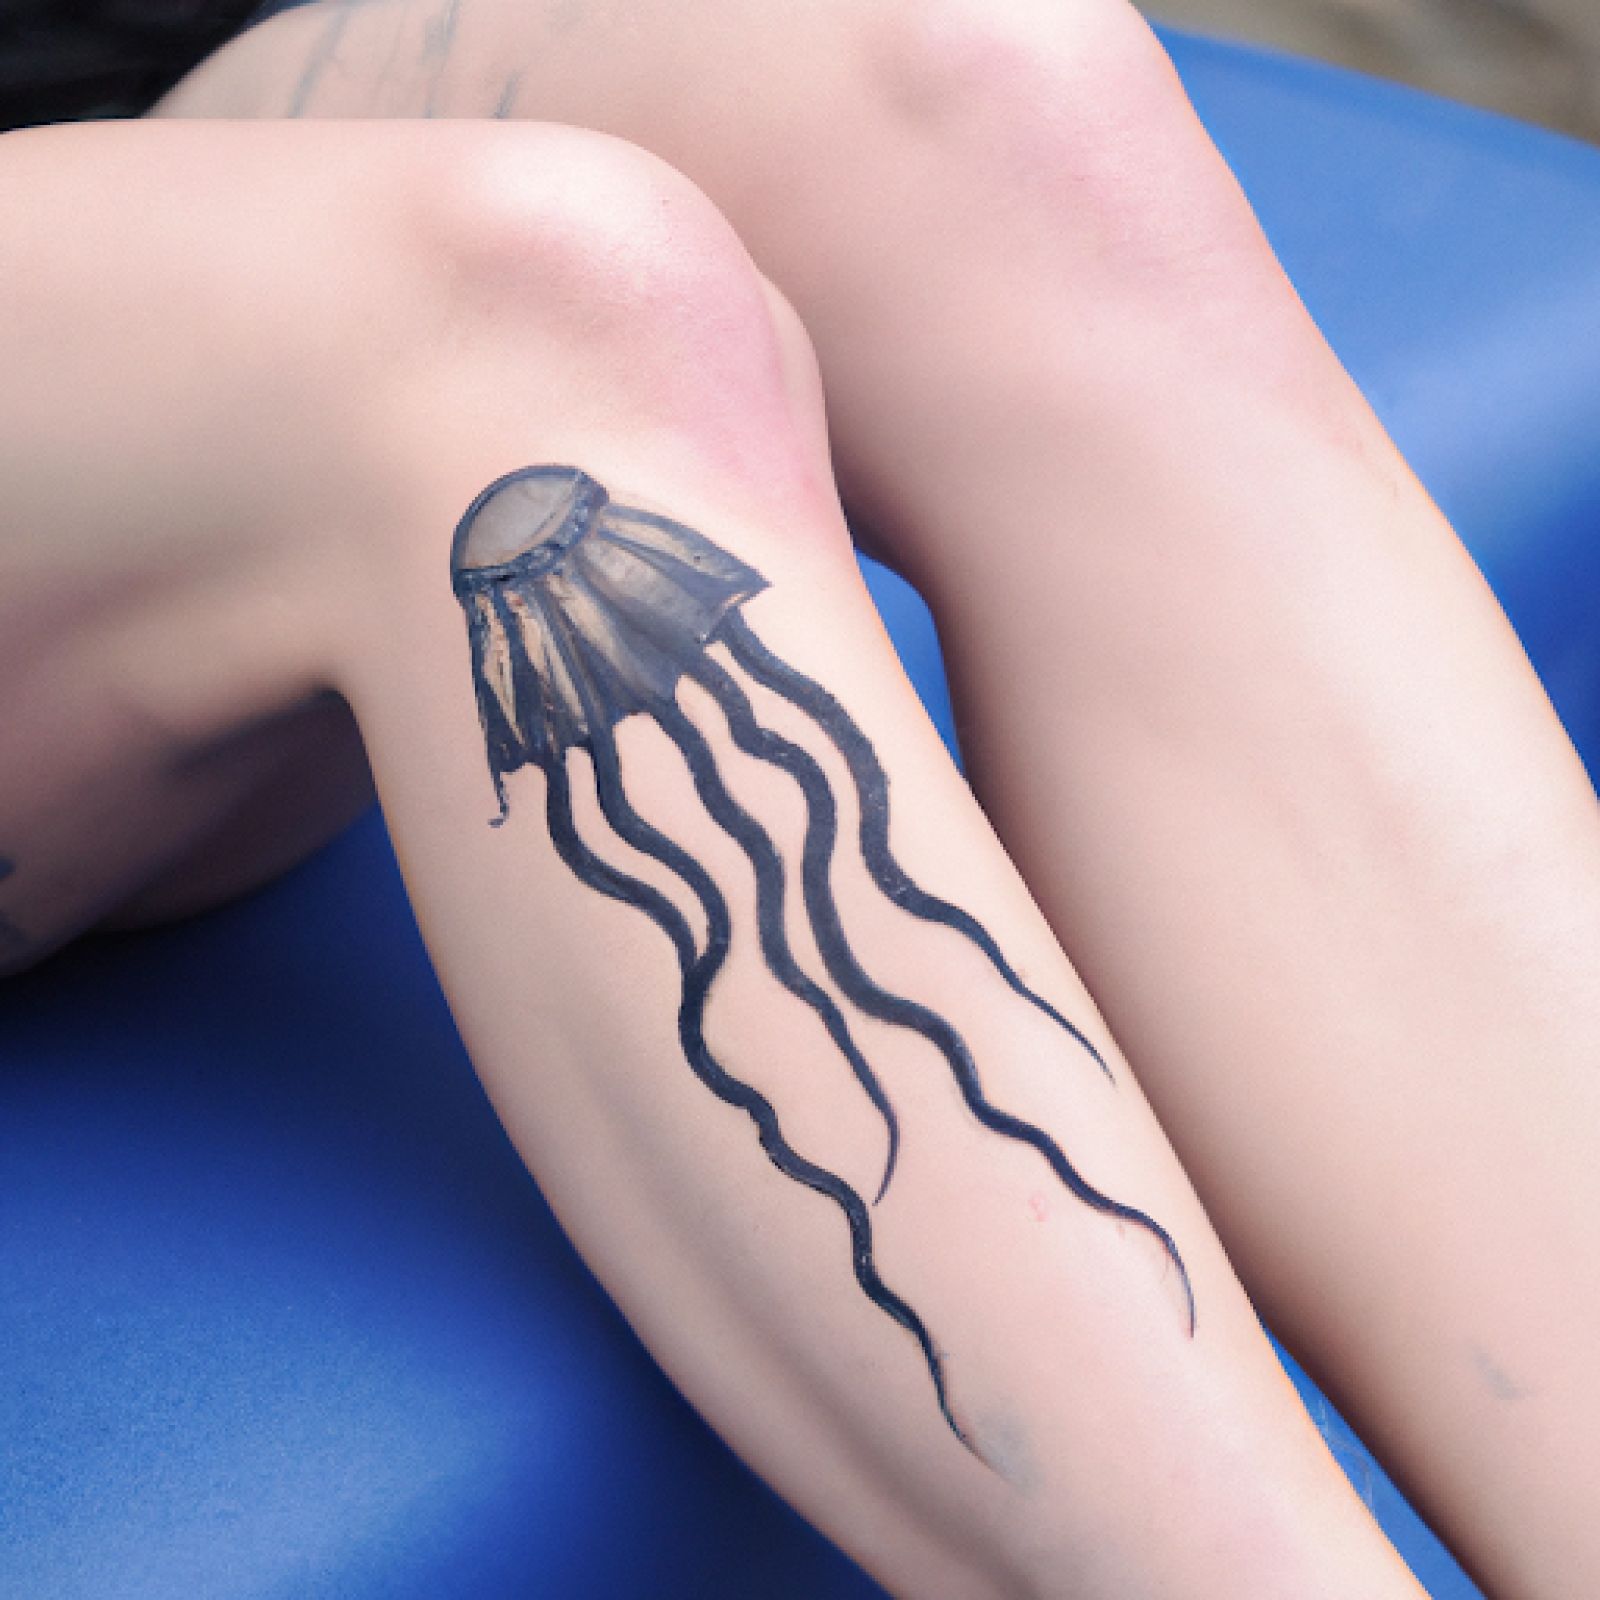 Medusa tattoo on knee for women